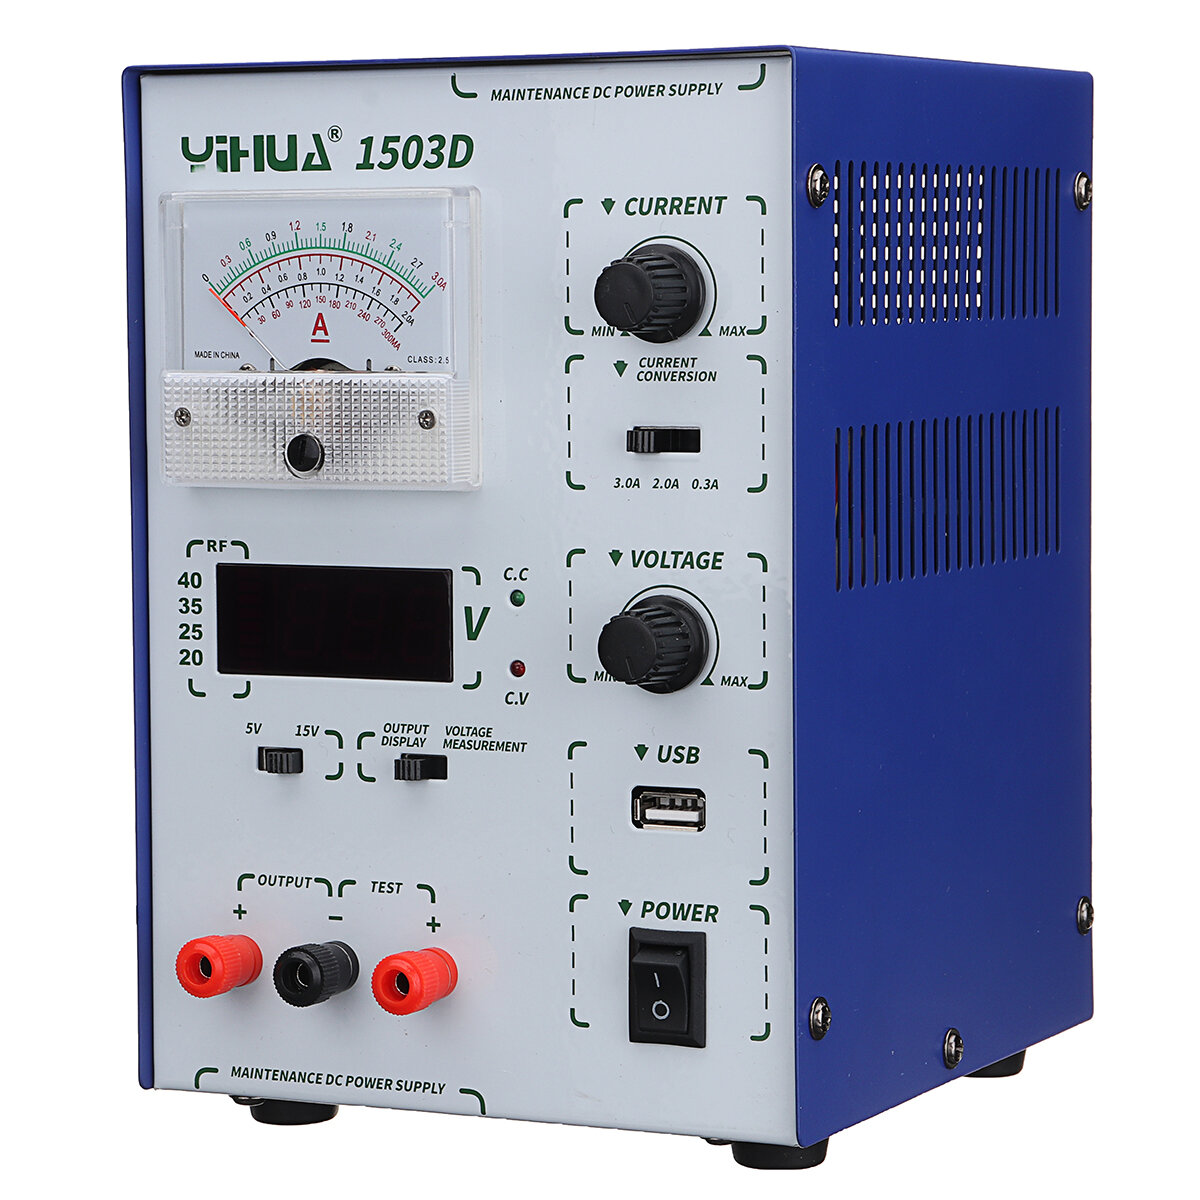 

YIHUA 1503D 15V 3A 110V/220V Precision Variable Dual Digital DC Power Supply Lab Test